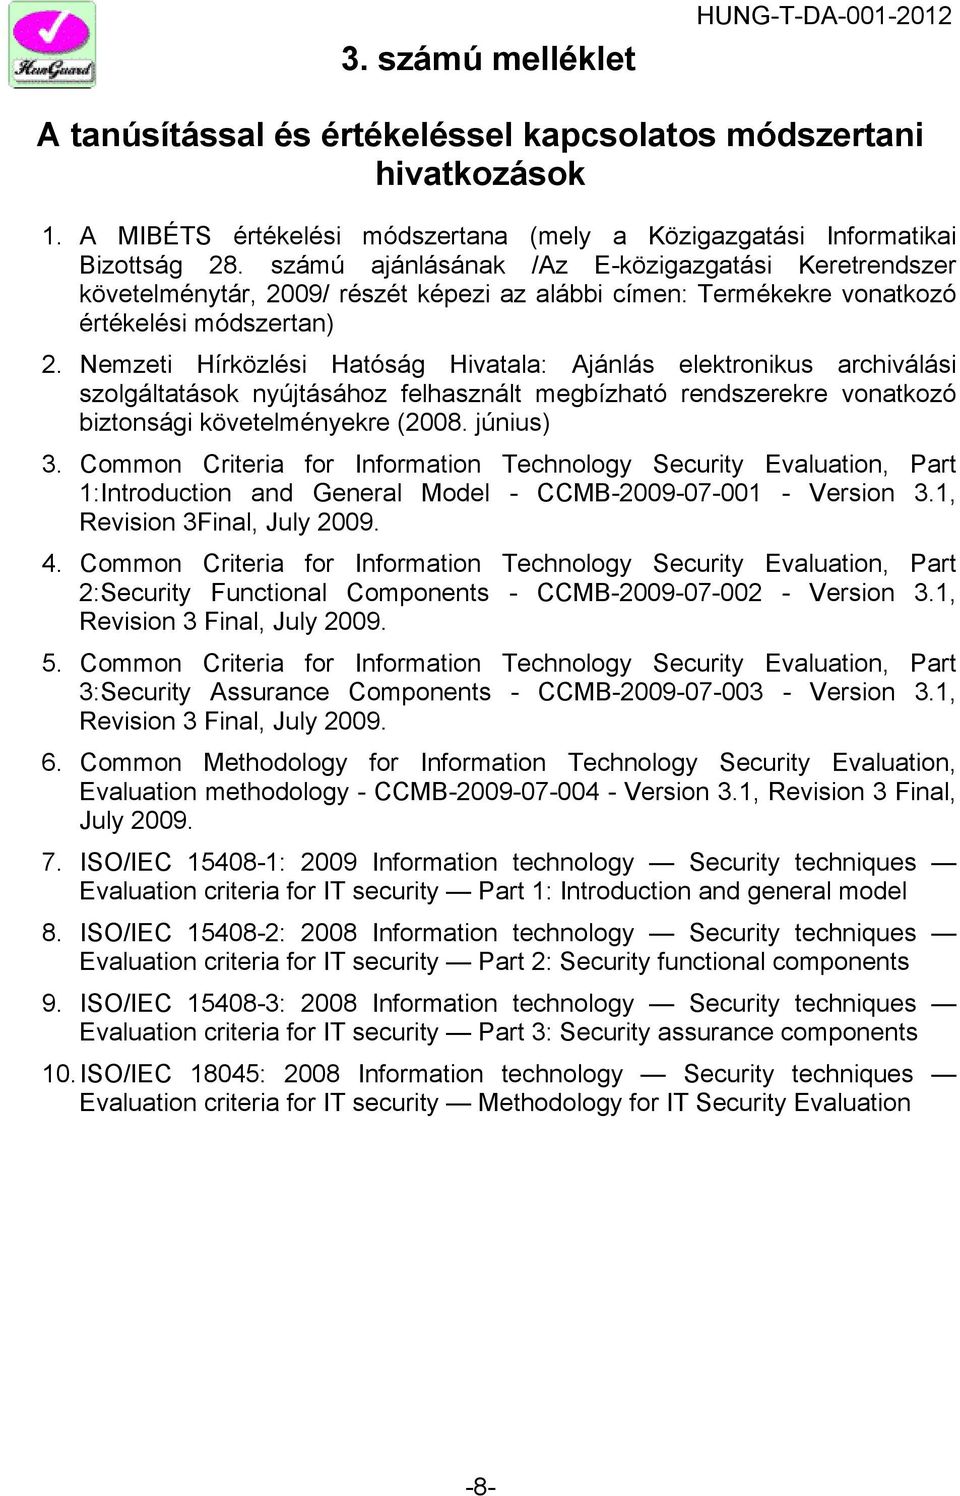 Nemzeti Hírközlési Hatóság Hivatala: Ajánlás elektronikus archiválási szolgáltatások nyújtásához felhasznált megbízható rendszerekre vonatkozó biztonsági követelményekre (2008. június) 3.